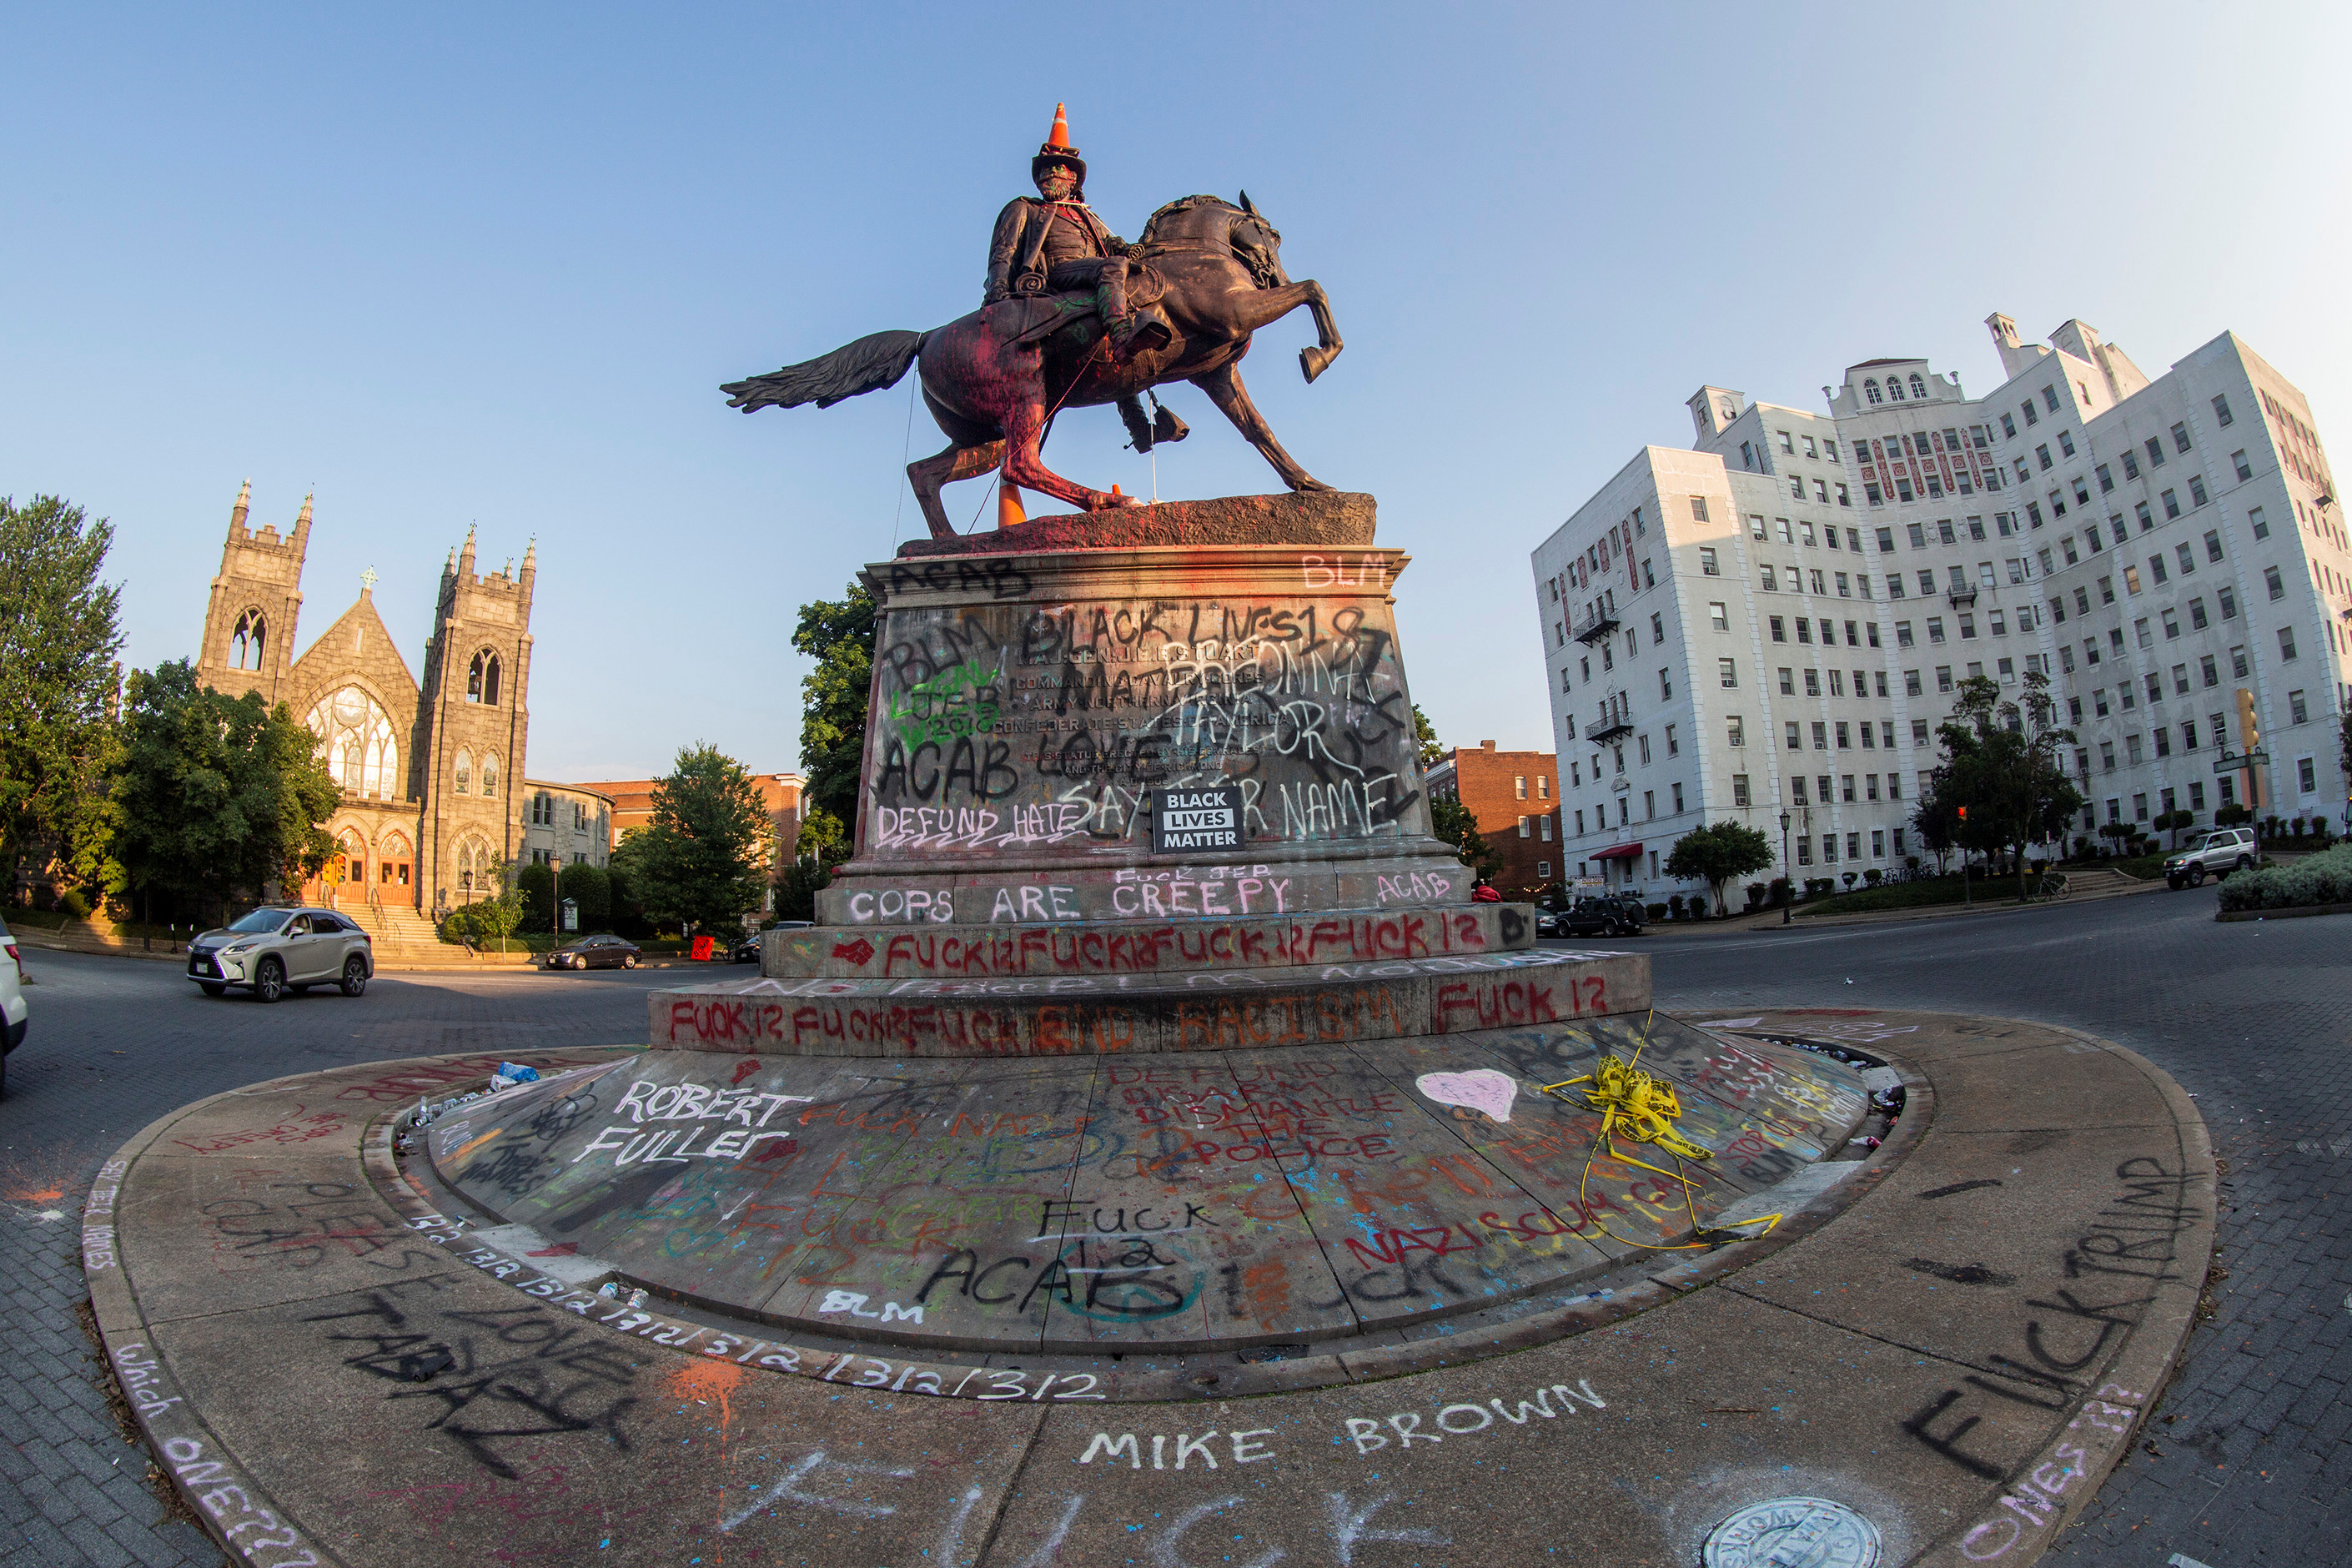 Conos de tráfico y una cuerda permanecen en la estatua del general confederado J.E.B. Stuart en Richmond, Virginia, EE. UU (REUTERS / Jay Paul)
